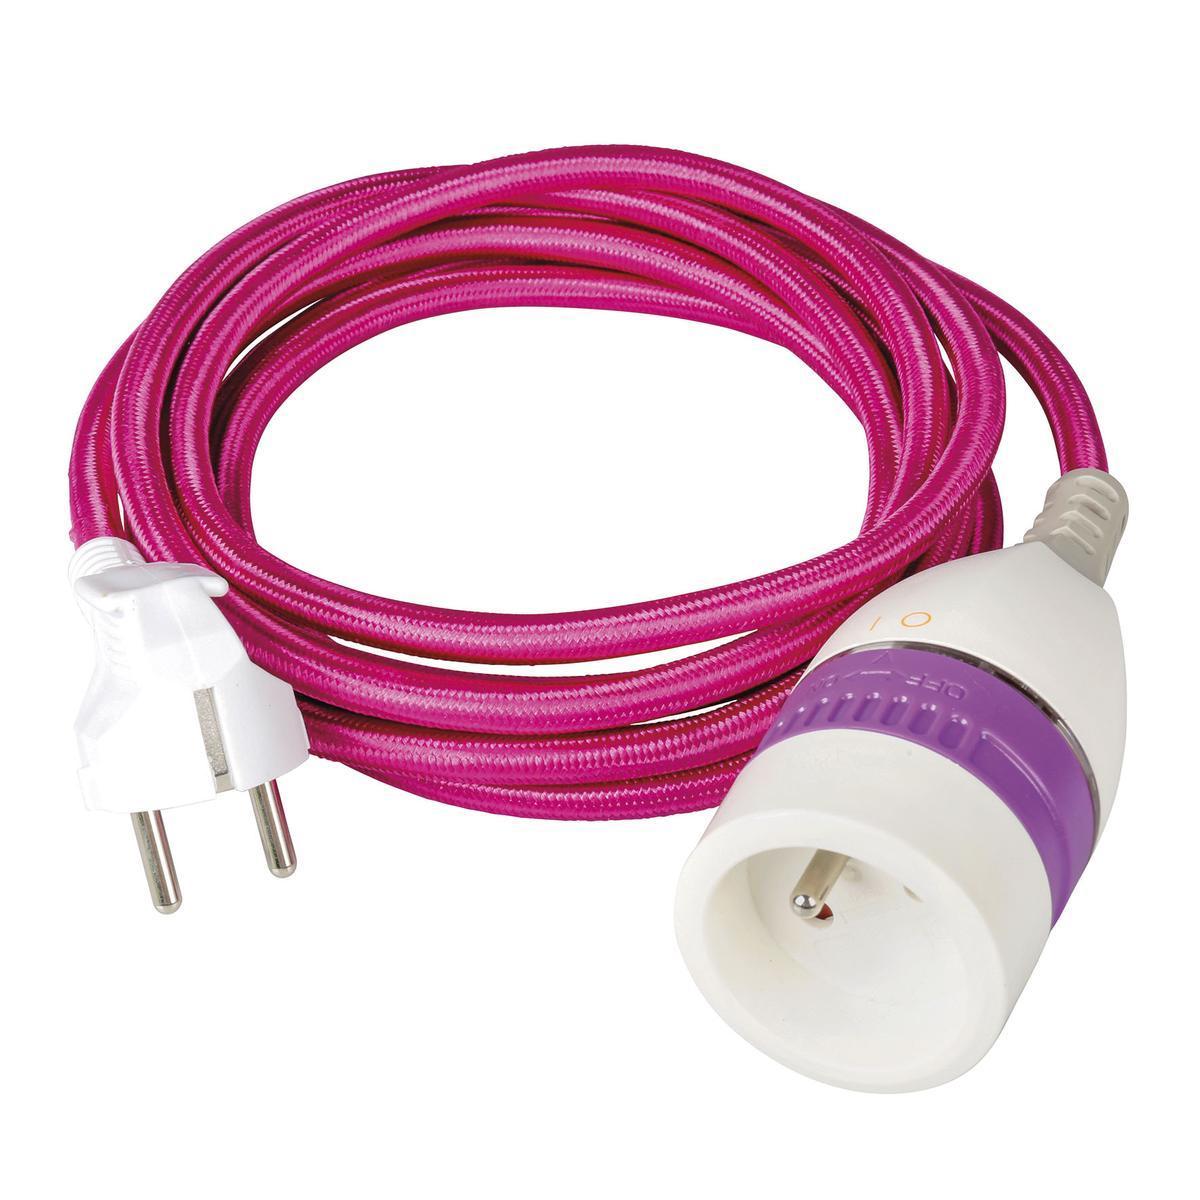 Prolongateur internet et cable - L 3 m - Violet